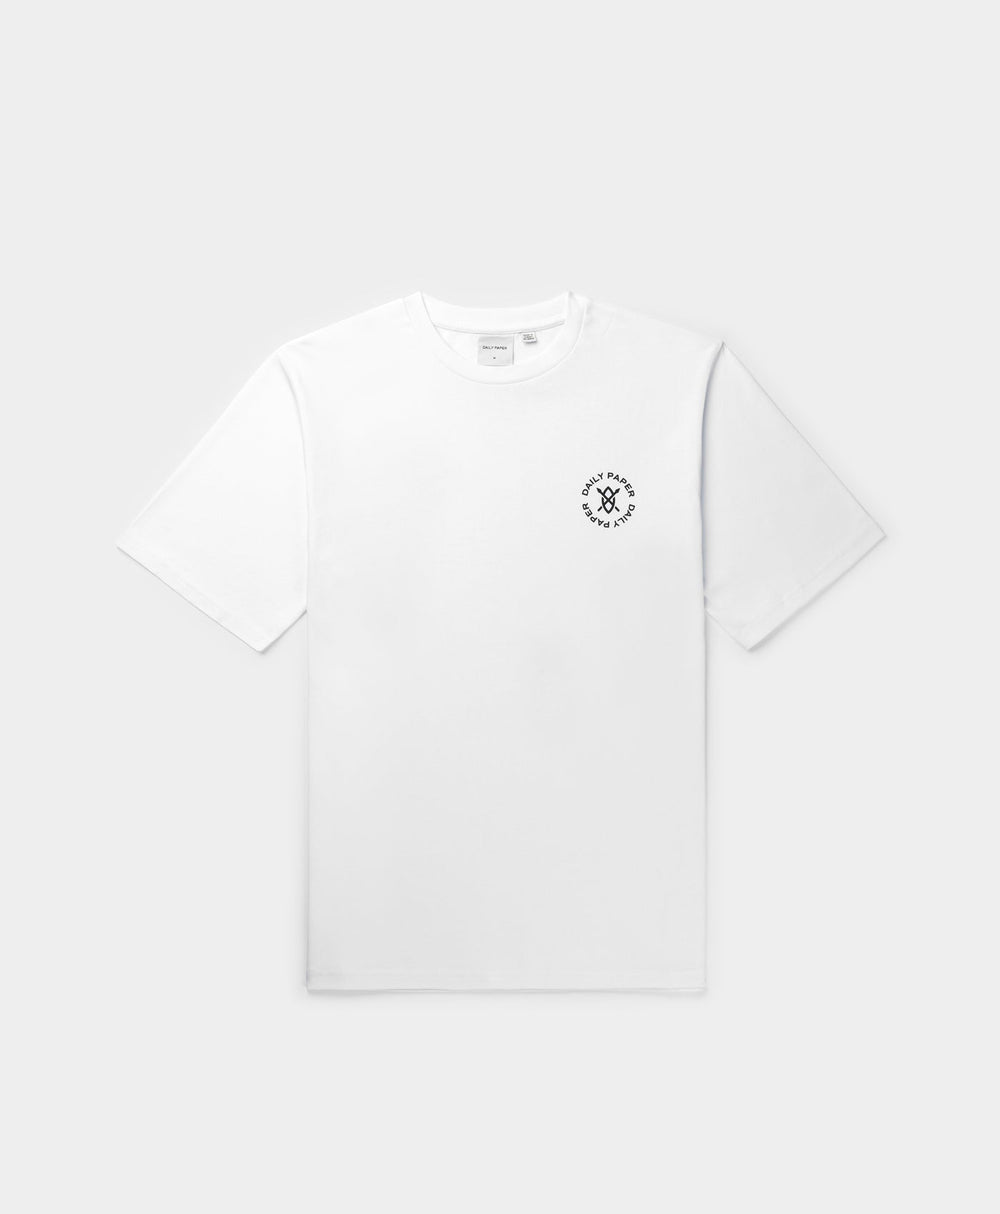 DP - White Circle T-Shirt - Packshot - Front